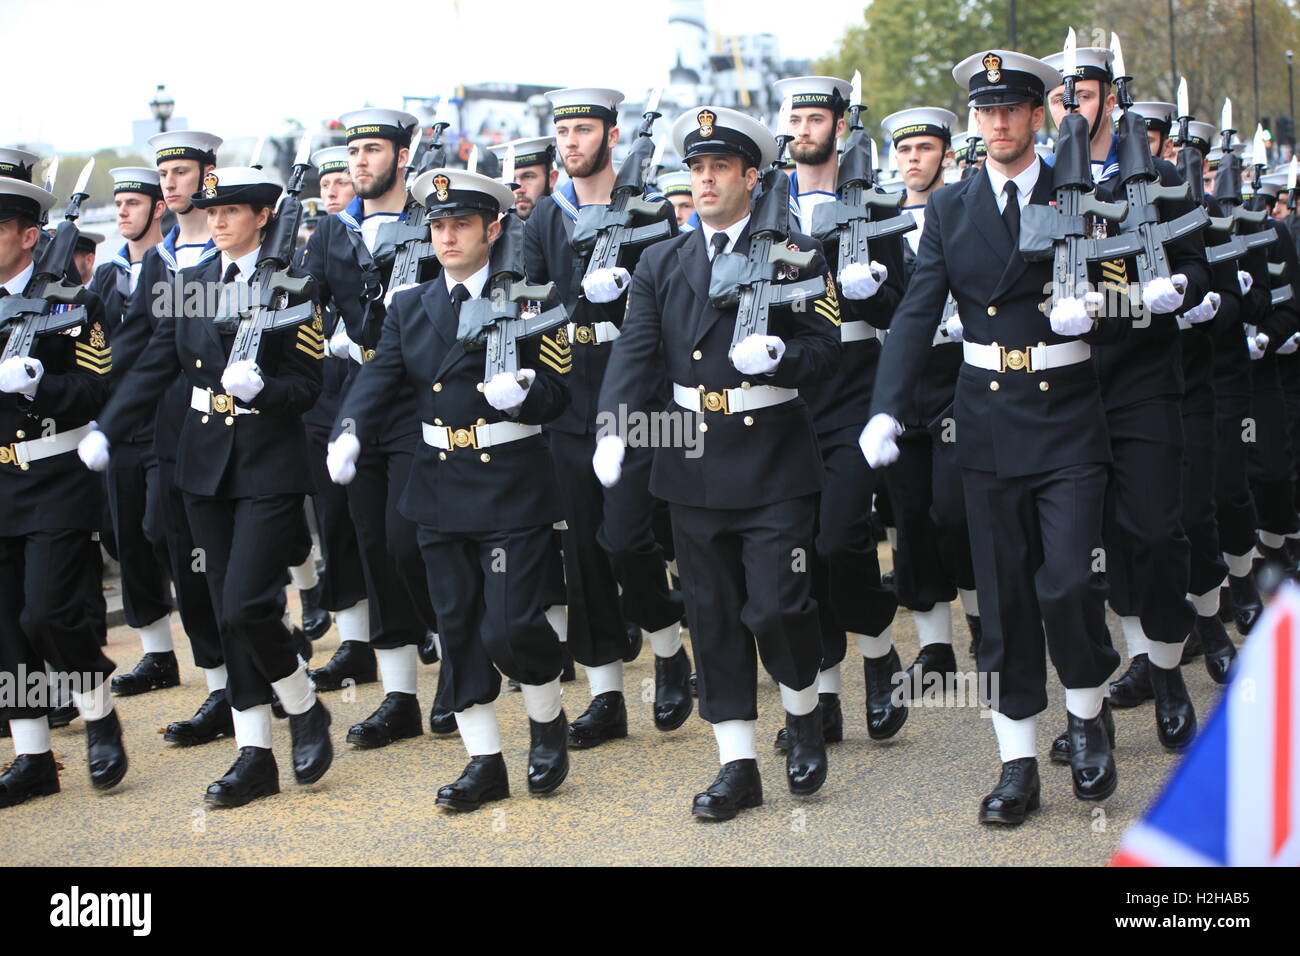 Royal Navy al signore sindaco di mostrare, Londra, Regno Unito. Foto Stock